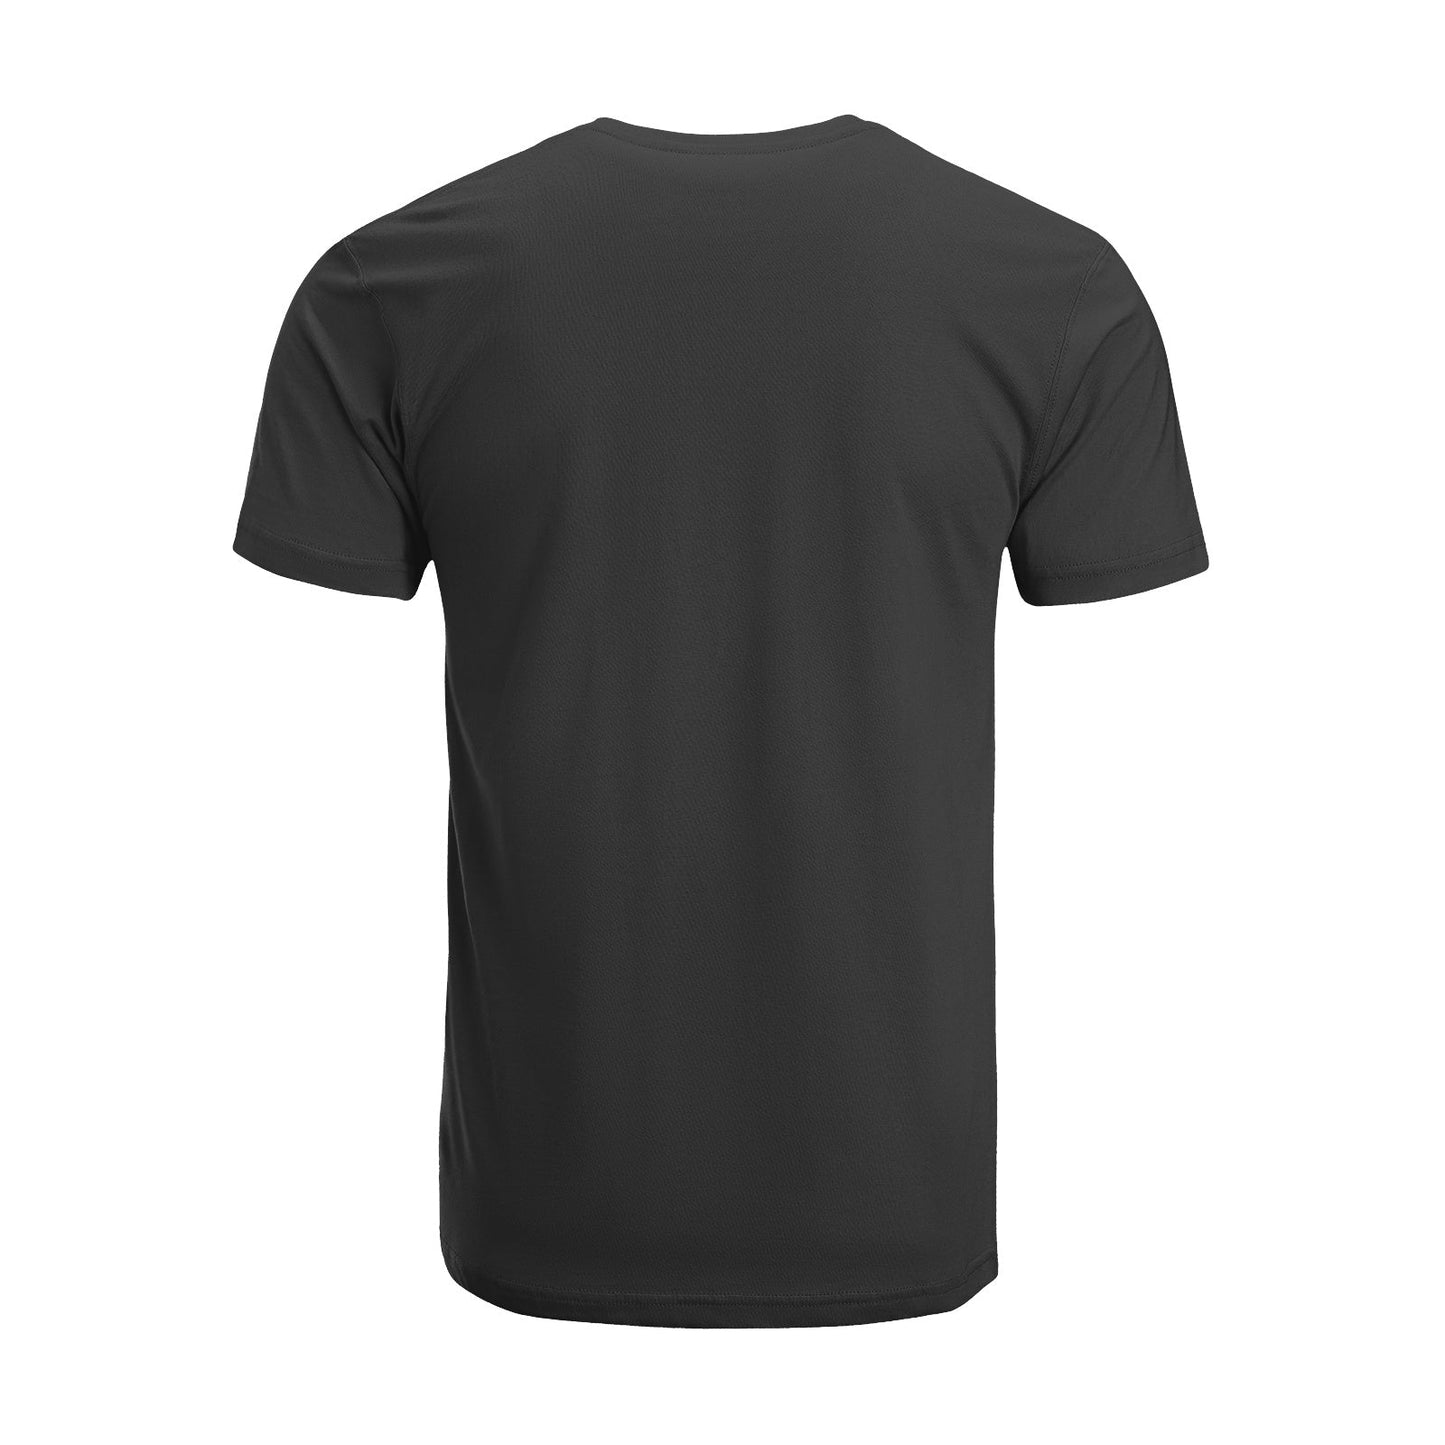 Unisex Short Sleeve Crew Neck Cotton Jersey T-Shirt TRUCK 36